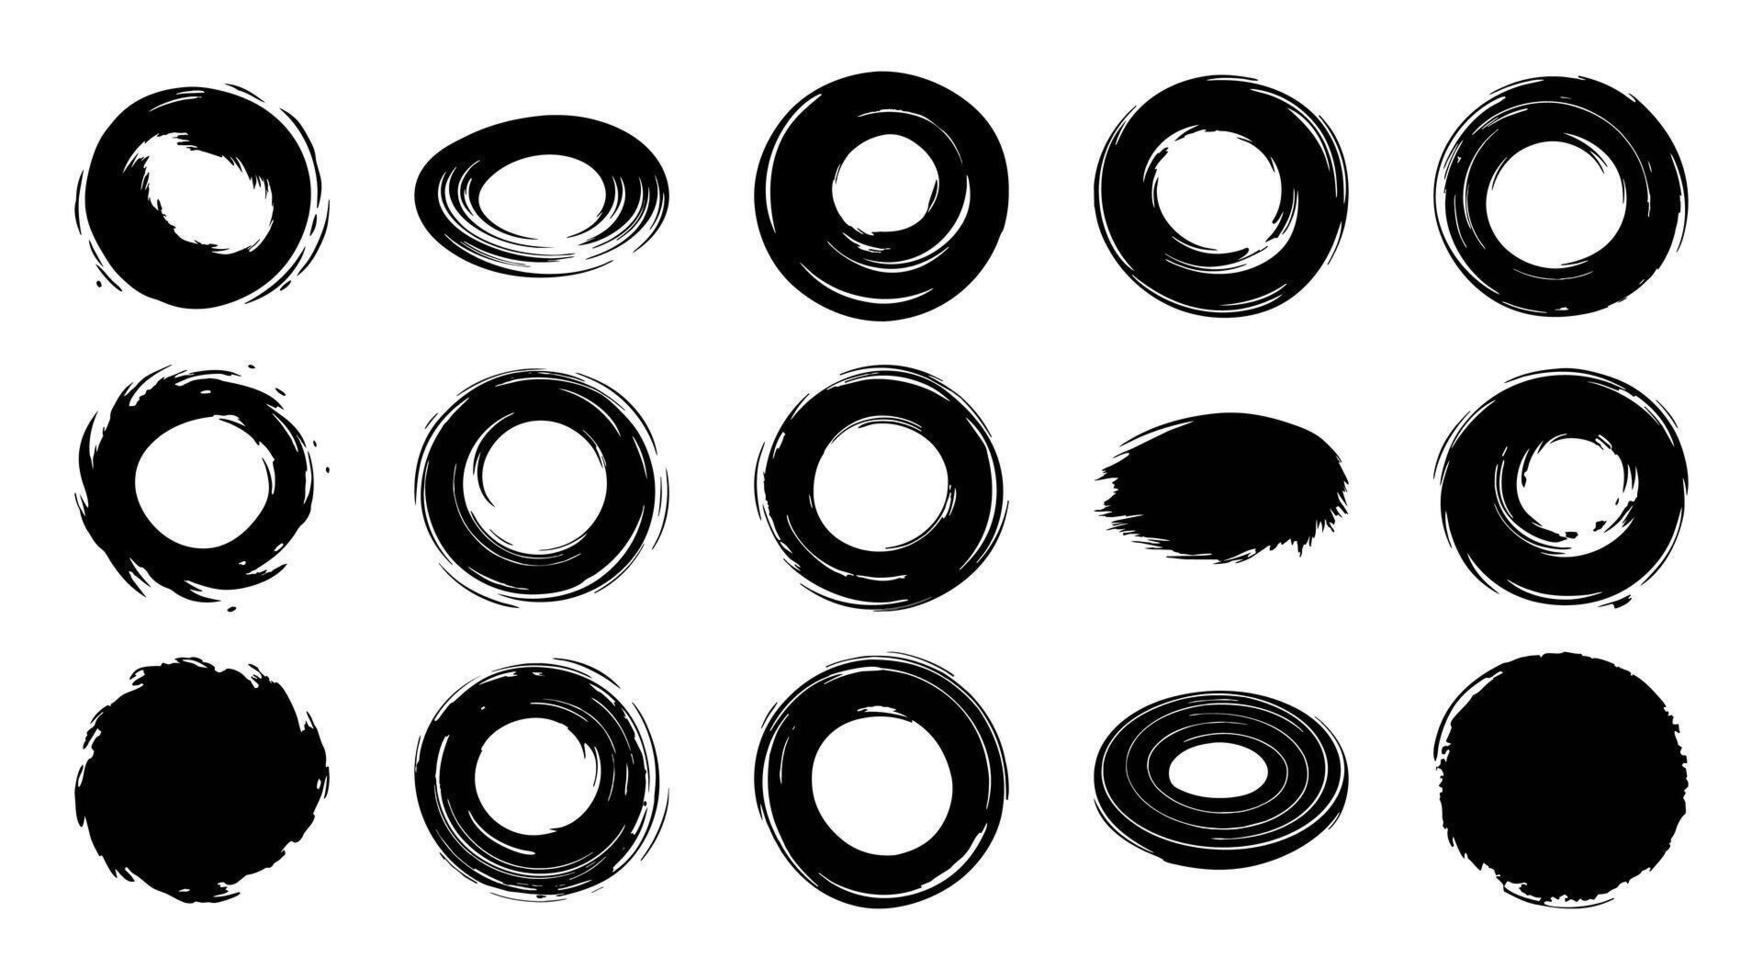 15 populär samling av cirkulär penseldrag i abstrakt svart måla vektor